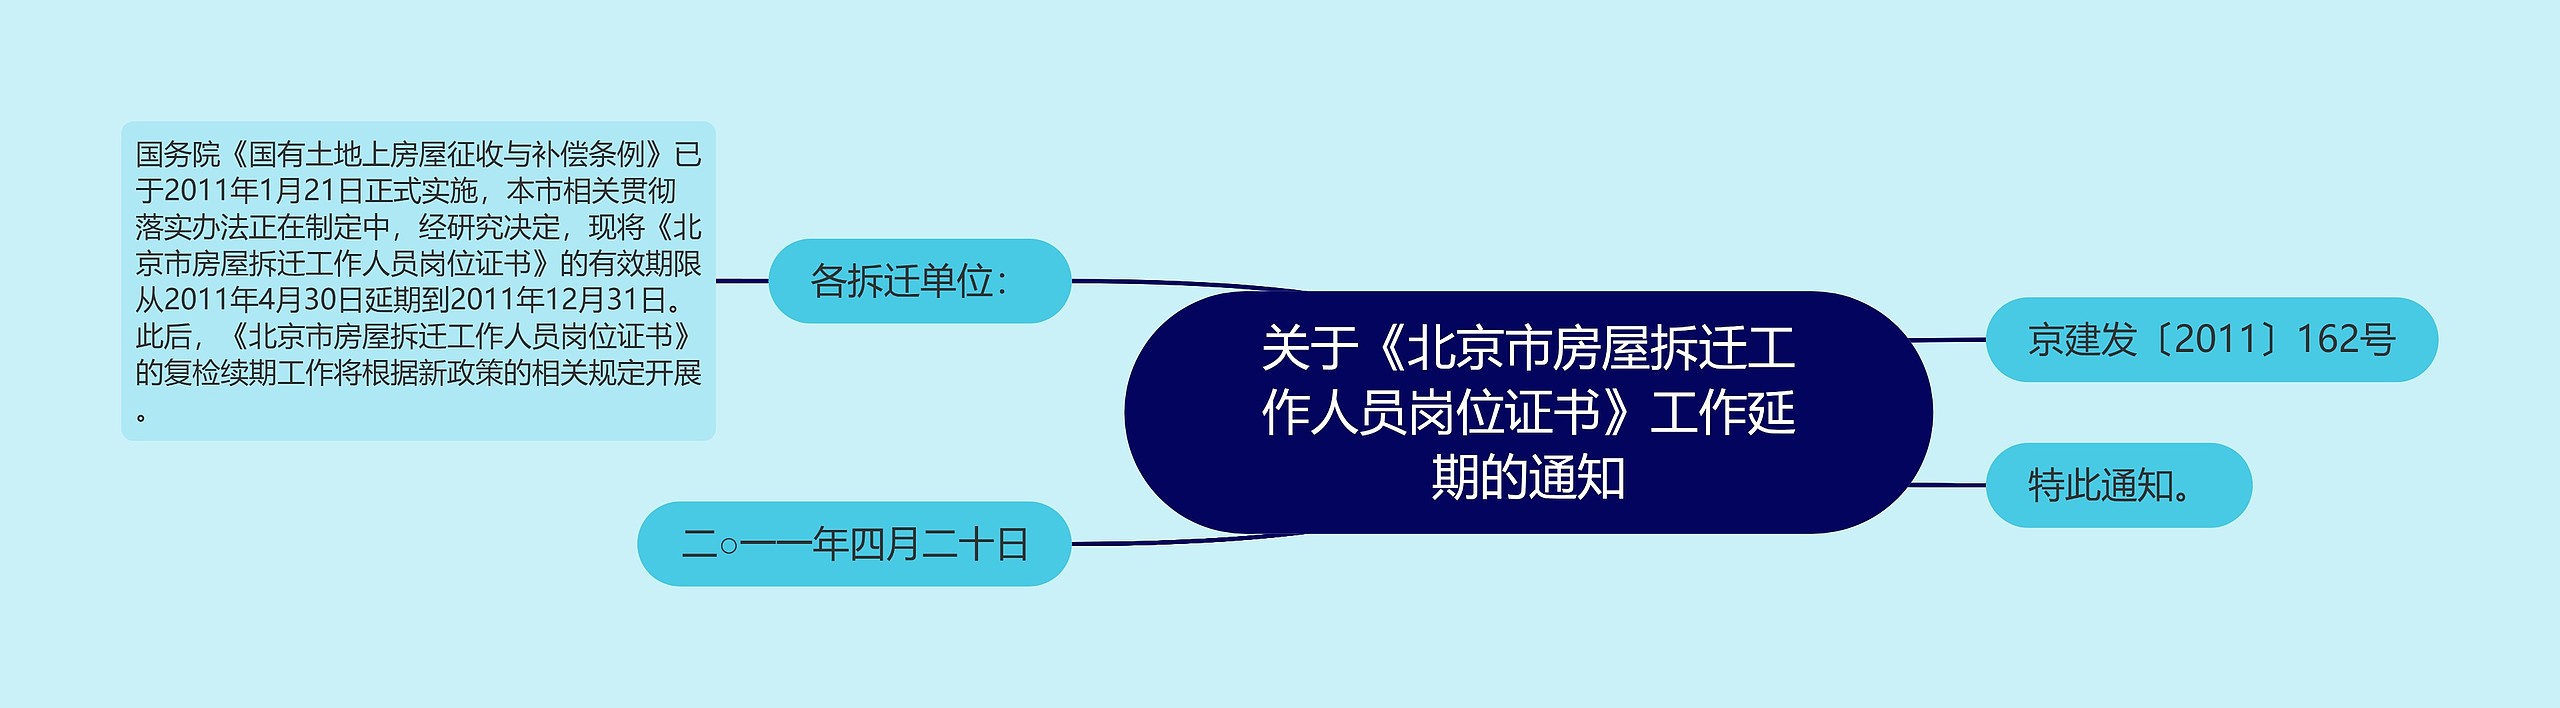 关于《北京市房屋拆迁工作人员岗位证书》工作延期的通知思维导图